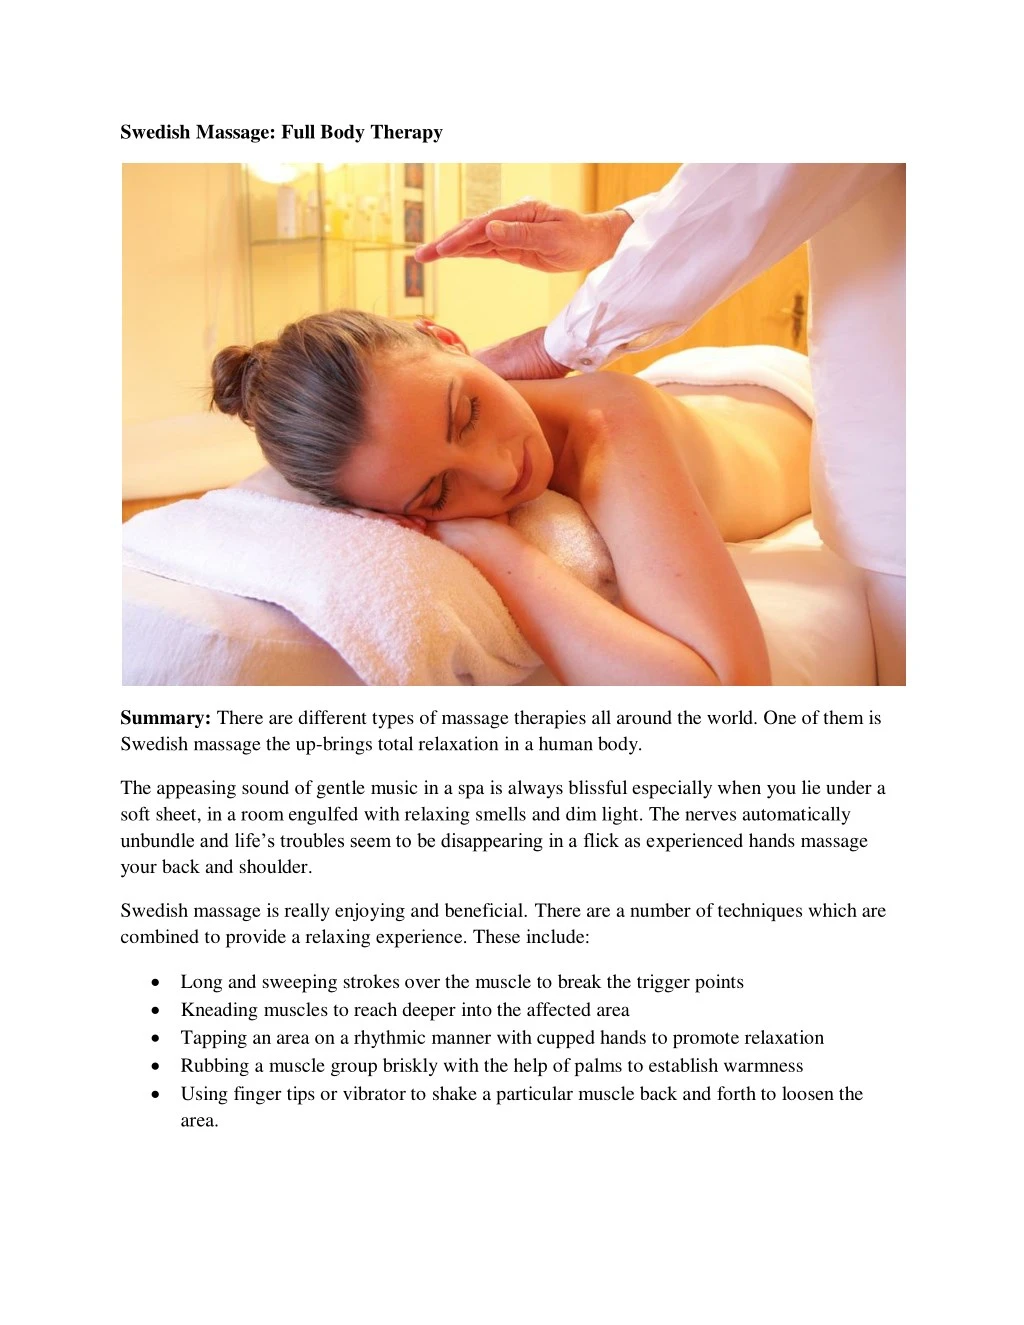 swedish massage full body therapy